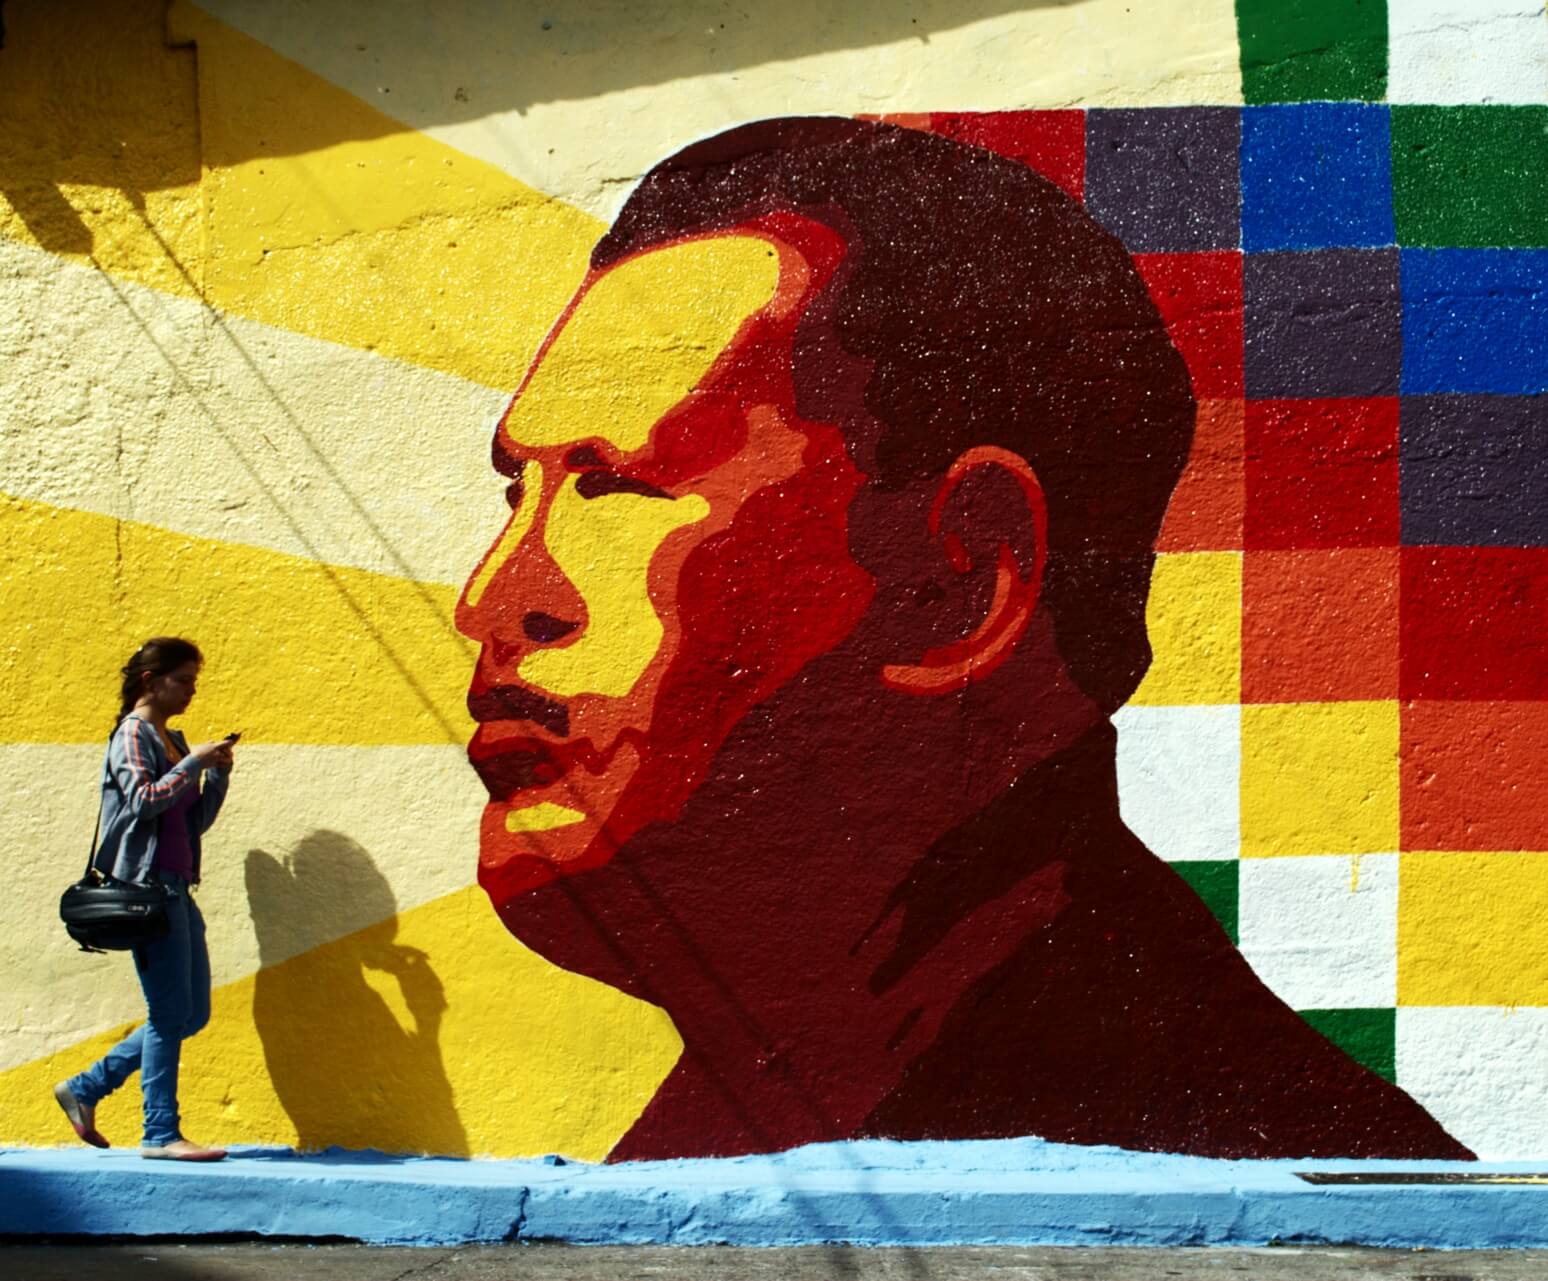 Muurschildering van Hugo Chávez in Merida, Venezuela. ©Flickr/David Hernandez